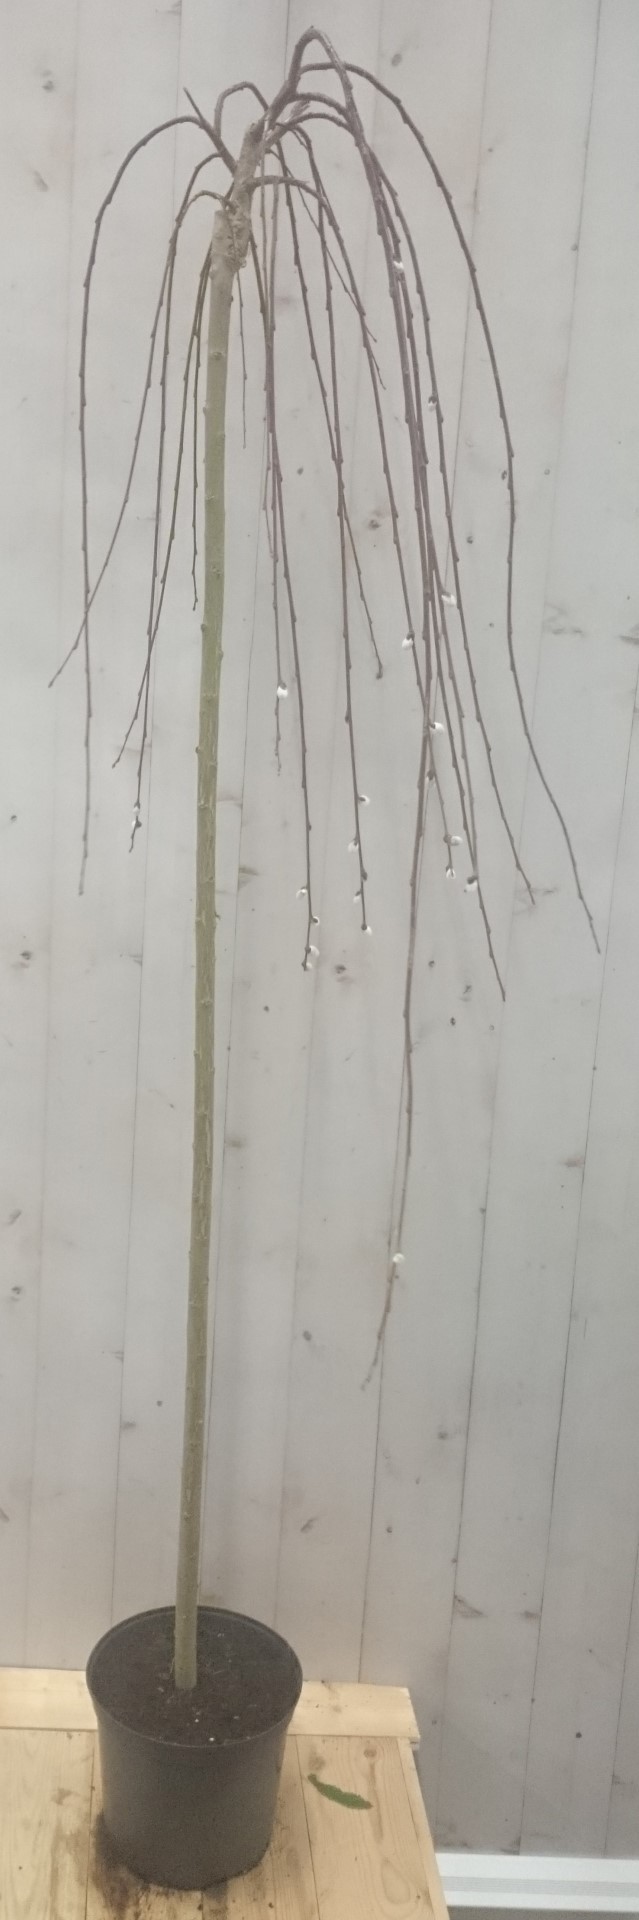 Salix Katjesboom 150 cm - Warentuin Natuurlijk